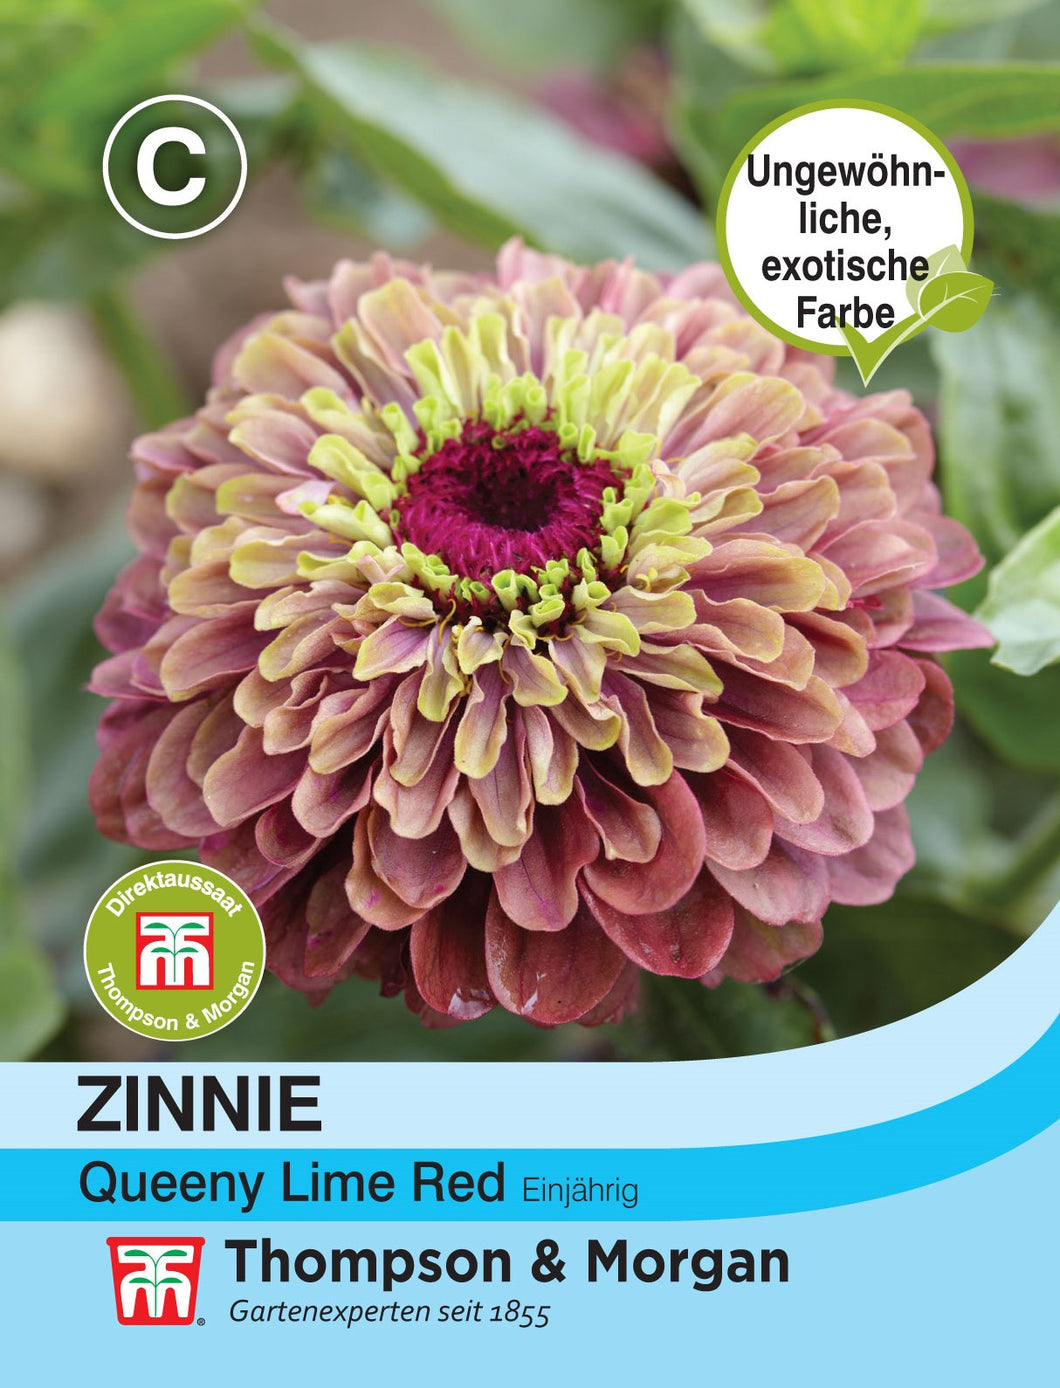 Zinnie Queeny Lime Red - Königliche Gartenakademie